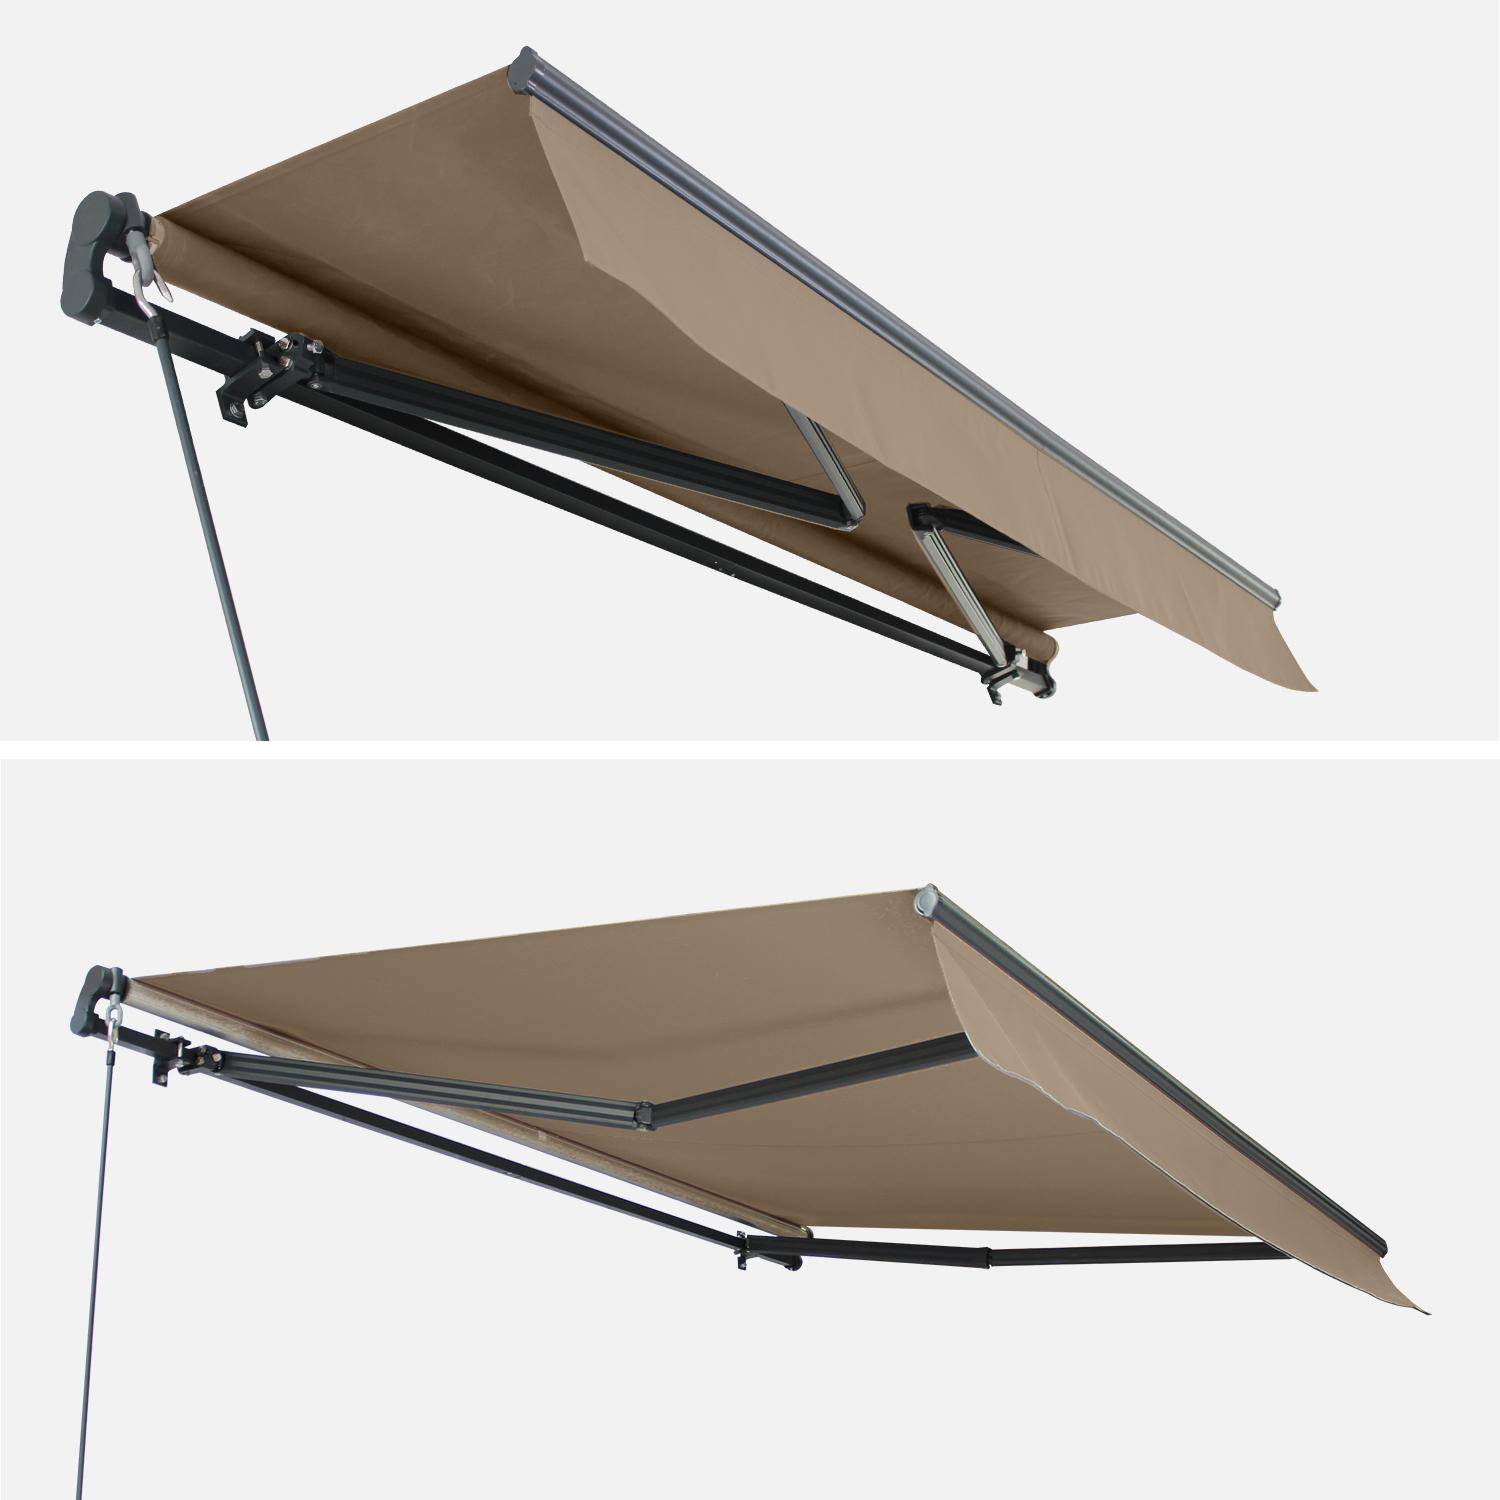 Tenda da sole - Alombra 3x2m Taupe - Monoblocco in alluminio, sistema manuale, senza cassonetto, tenda da sole per terrazza larghezza 295cm, tessuto in poliestere spalmato 280g, tenda a muro Photo4